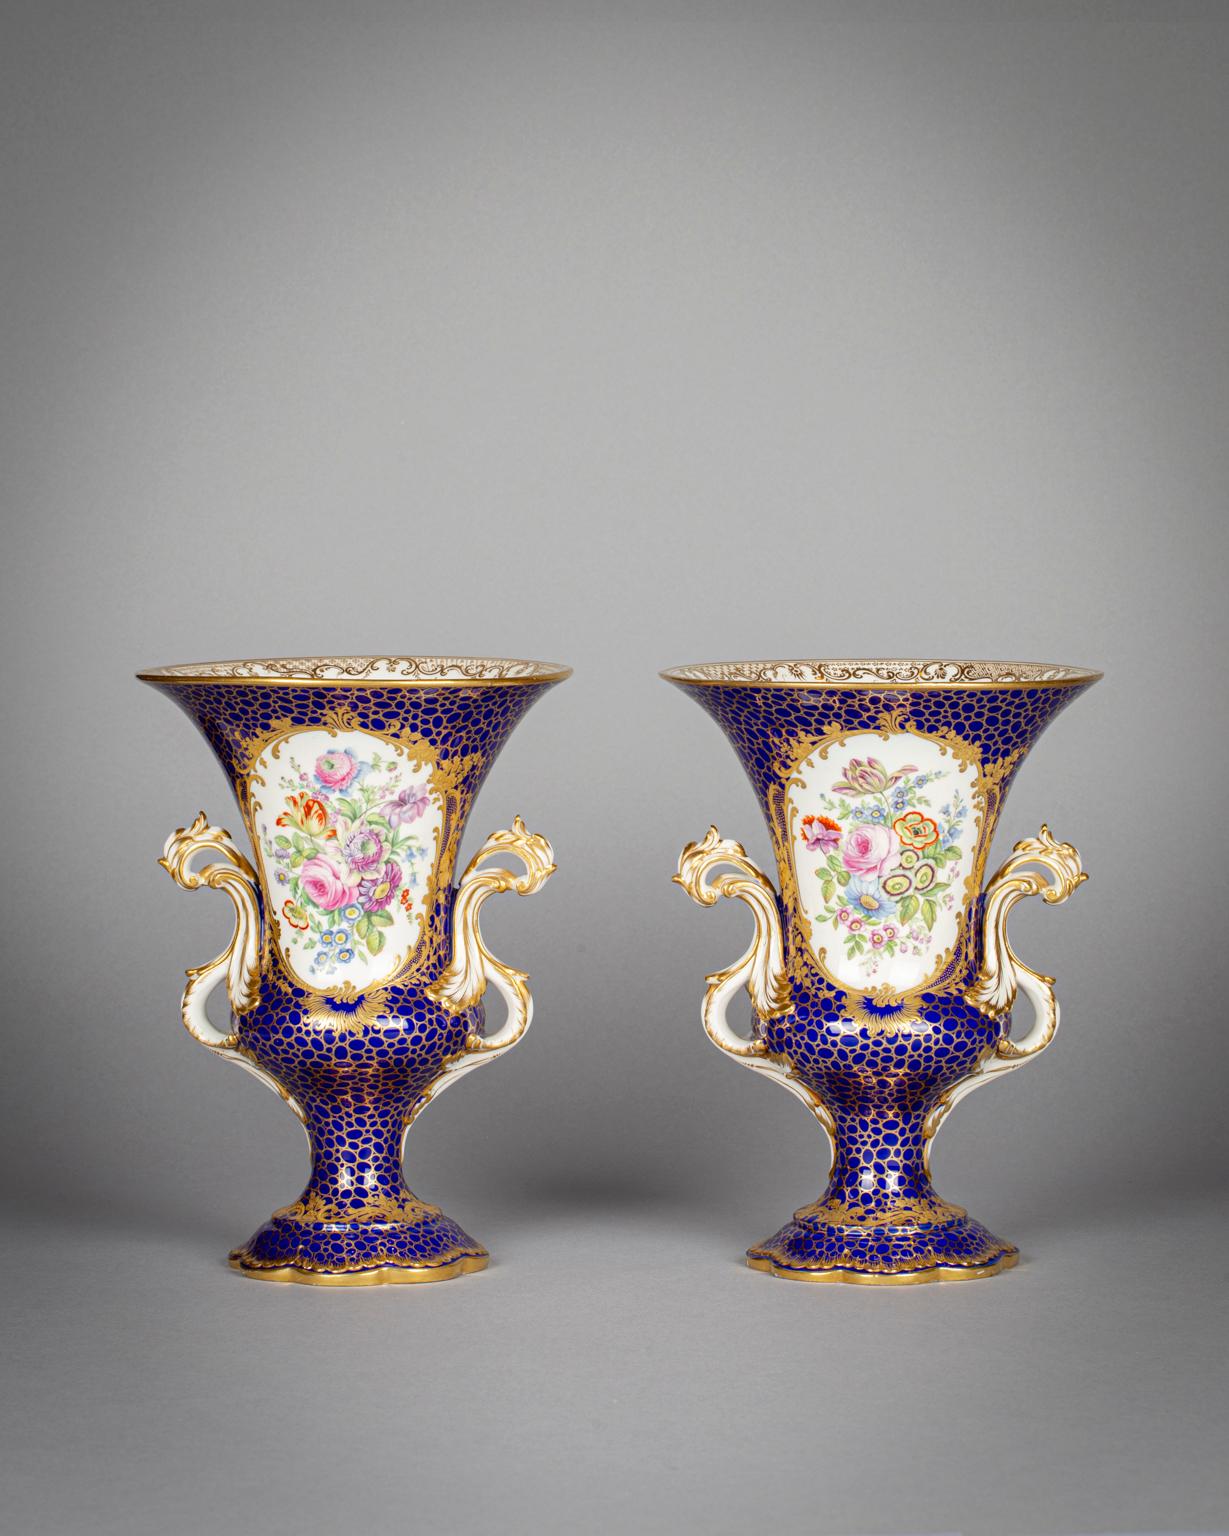 Jede Vase zeigt auf der einen Seite eine Landschaftsszene und auf der anderen Seite einen Blumenstrauß.